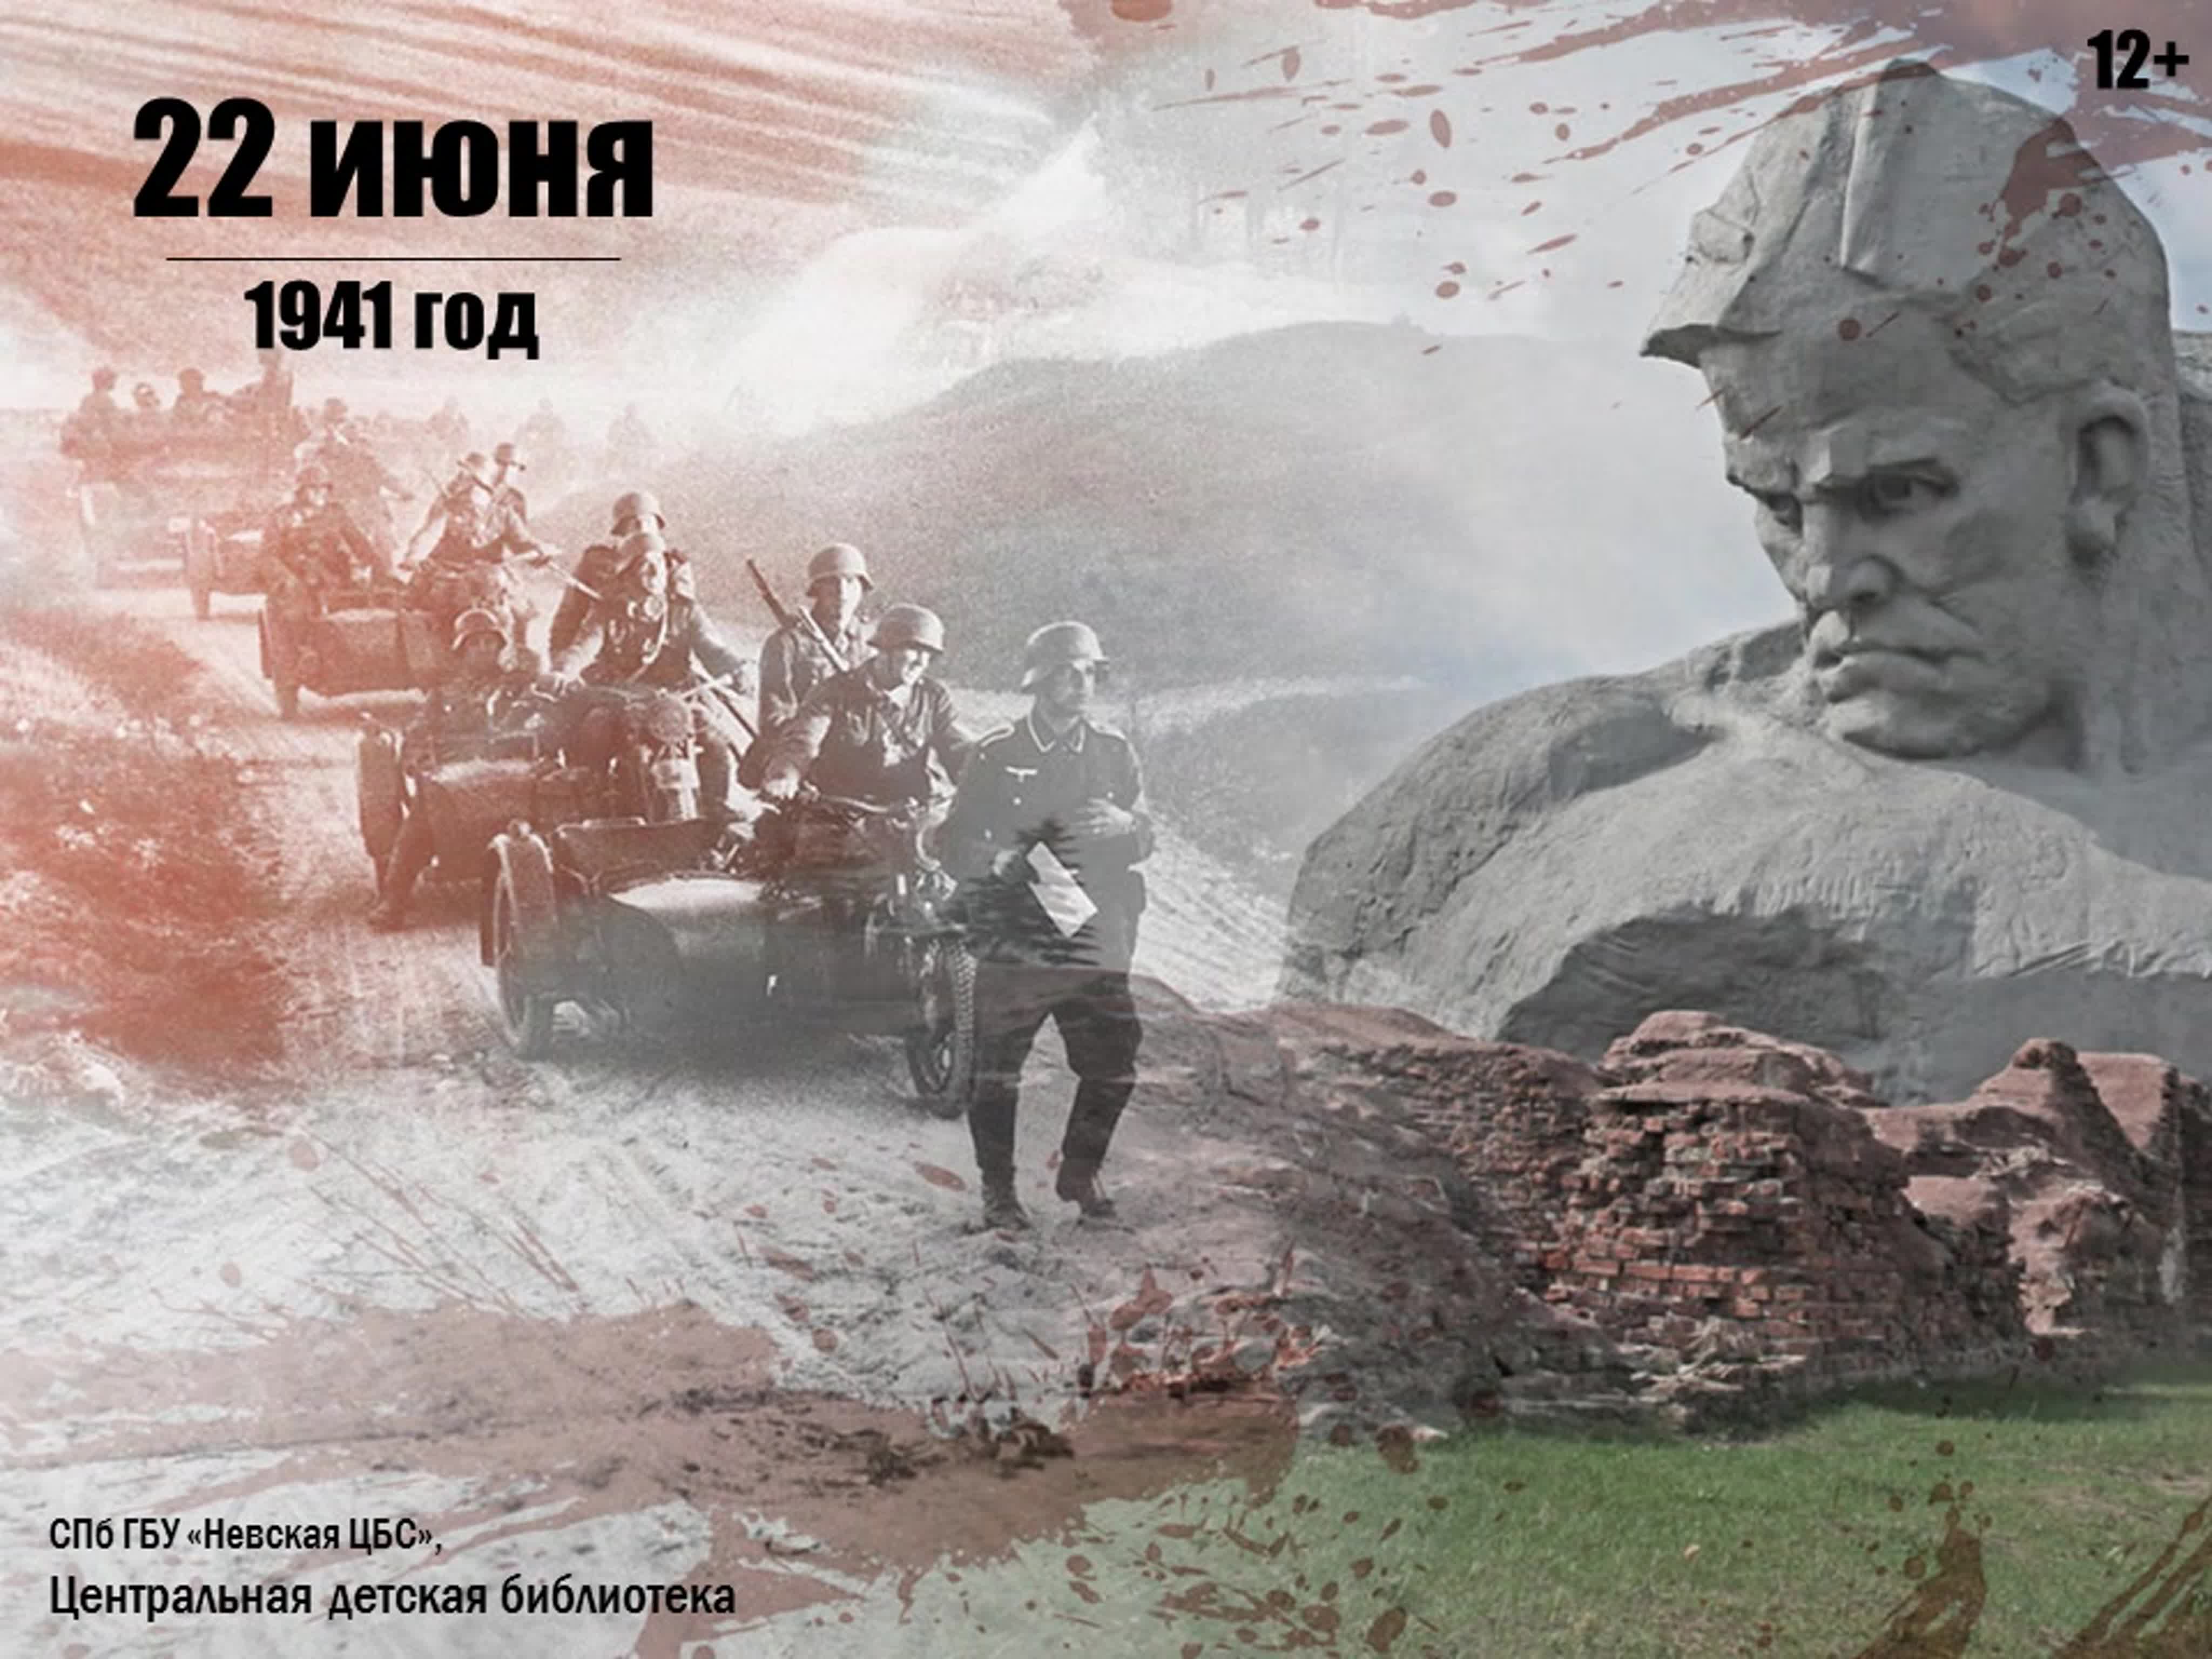 22 июня 20 июля. Оборона Брестской крепости в 1941. 22 Июня Брестская крепость. Начало войны 1941 Брестская крепость.